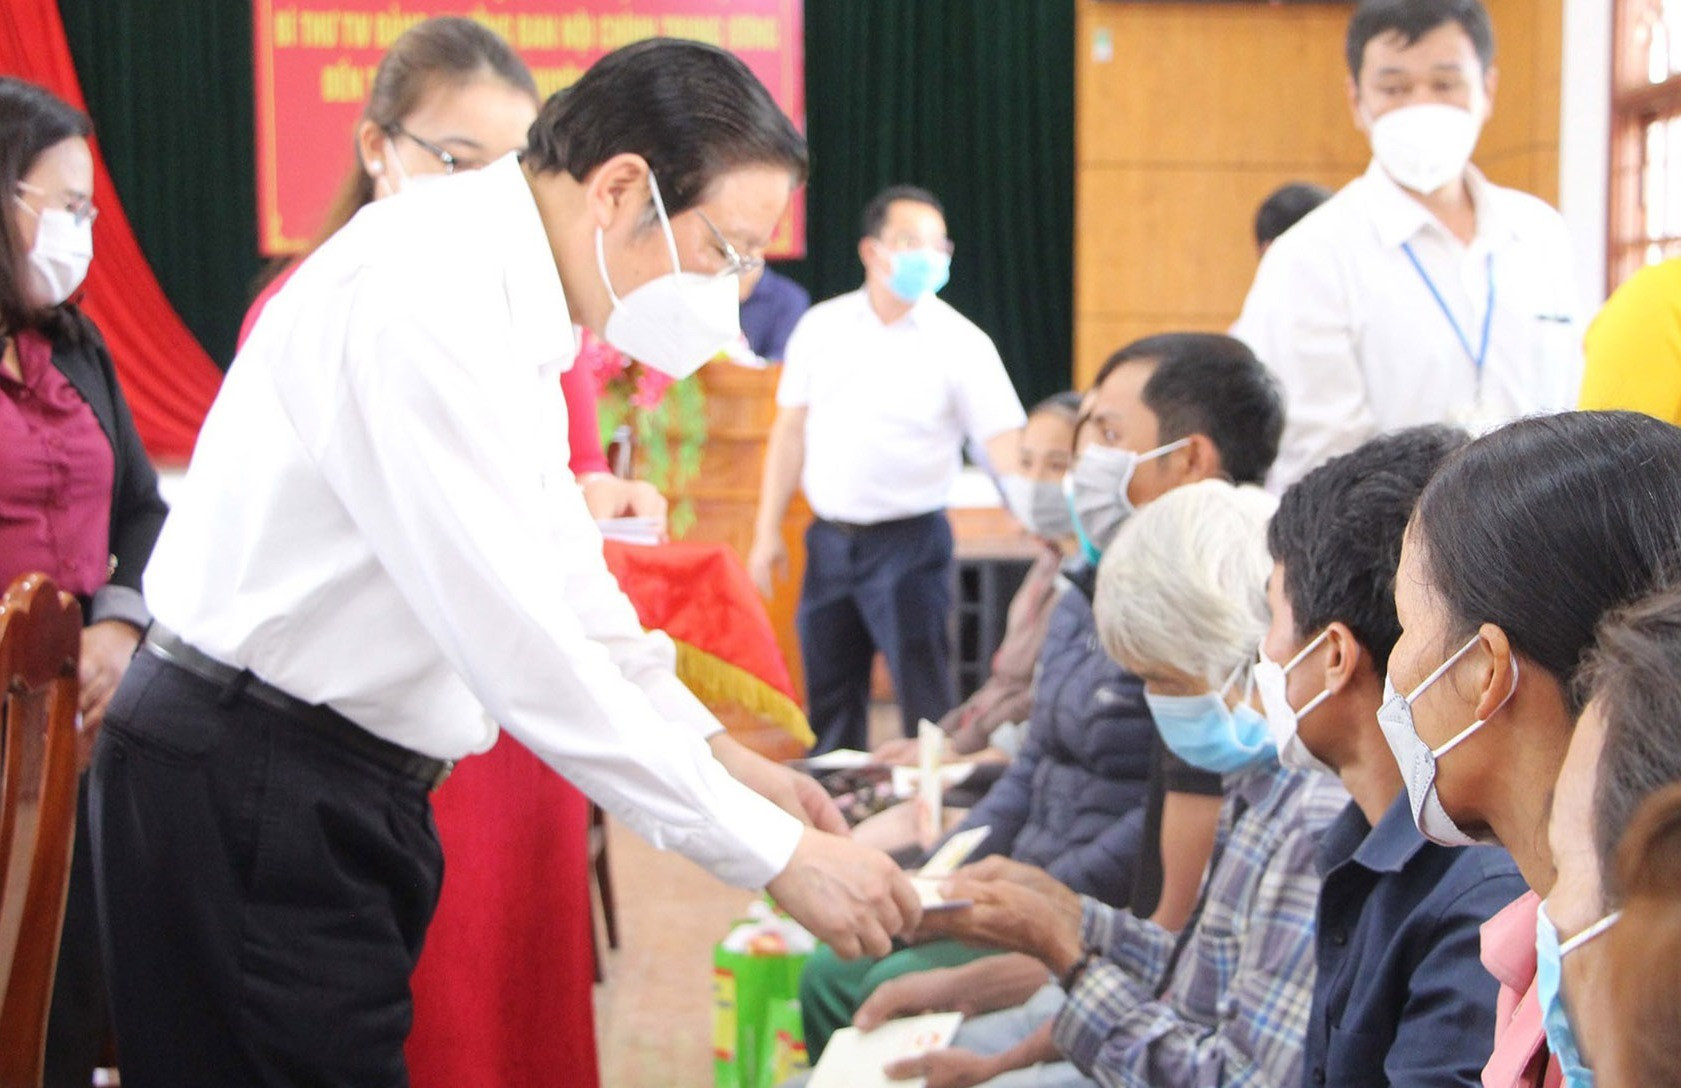 Đồng chí Phan Đình Trạc, Ủy viên Bộ Chính trị, Bí thư Trung ương Đảng, Trưởng Ban Nội chính Trung ương tặng quà cho các hộ nghèo, gia đình khó khăn do dịch bệnh COVID-19.